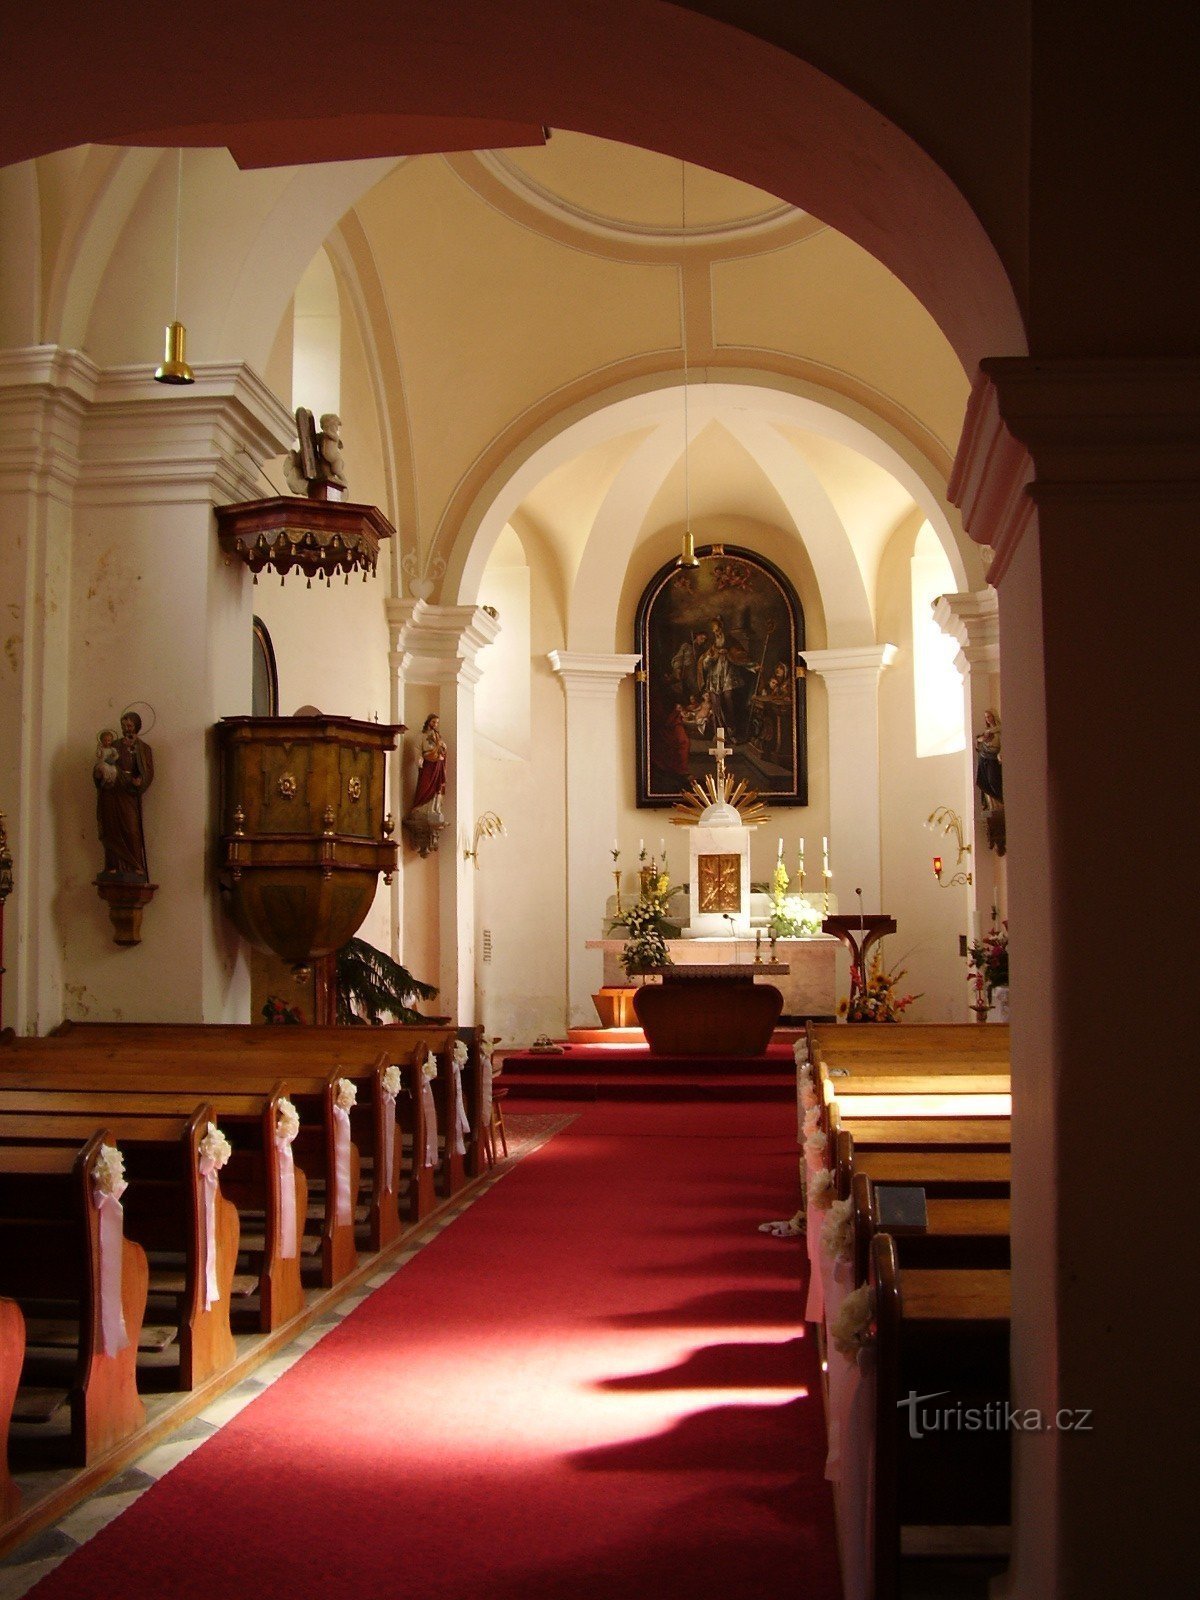 Церковь св. Николая в Деблине - интерьер